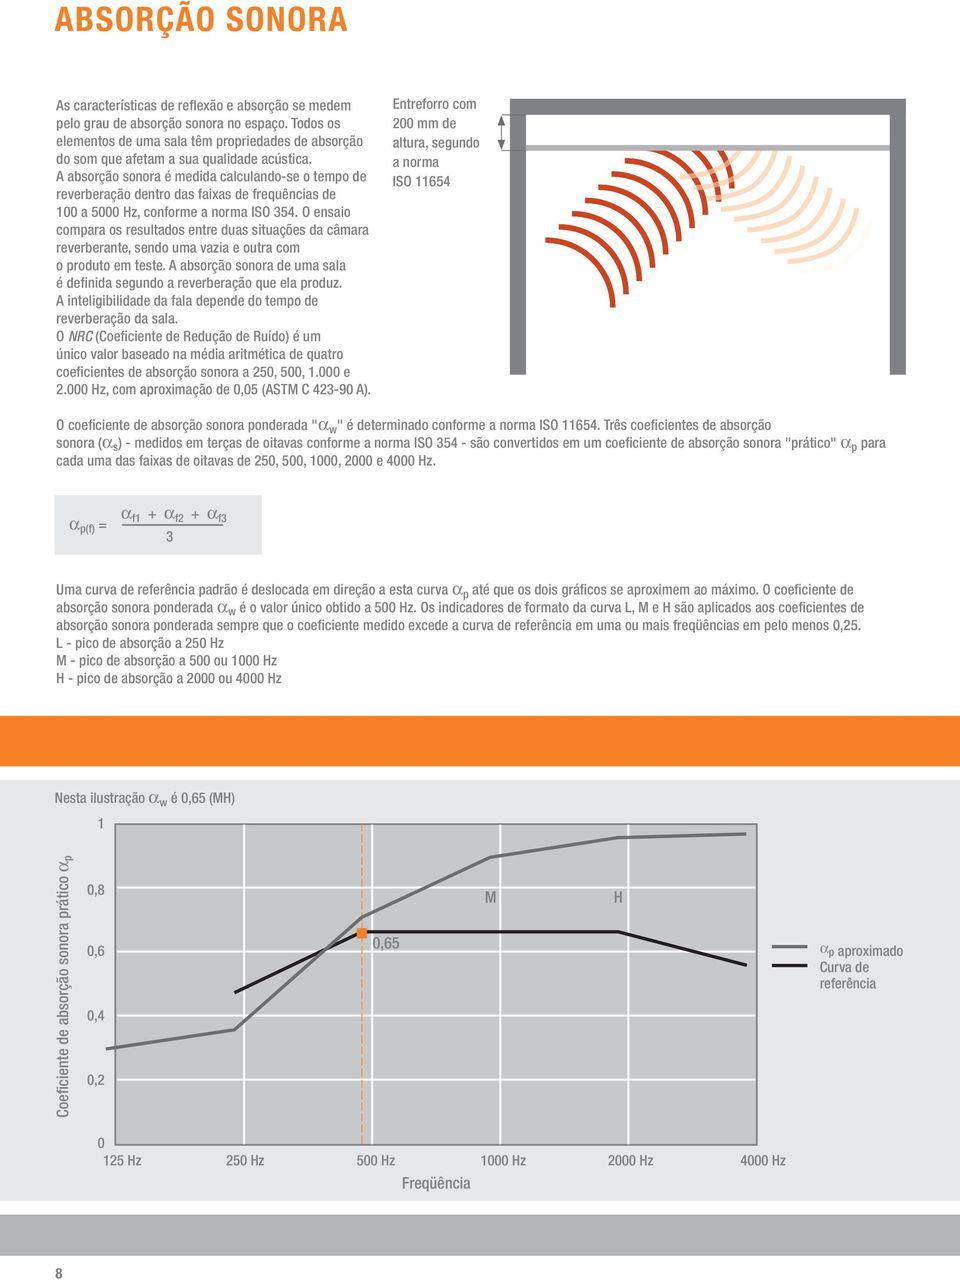 A absorção sonora é medida calculando-se o tempo de reverberação dentro das faixas de frequências de 100 a 5000 Hz, conforme a norma ISO 354.